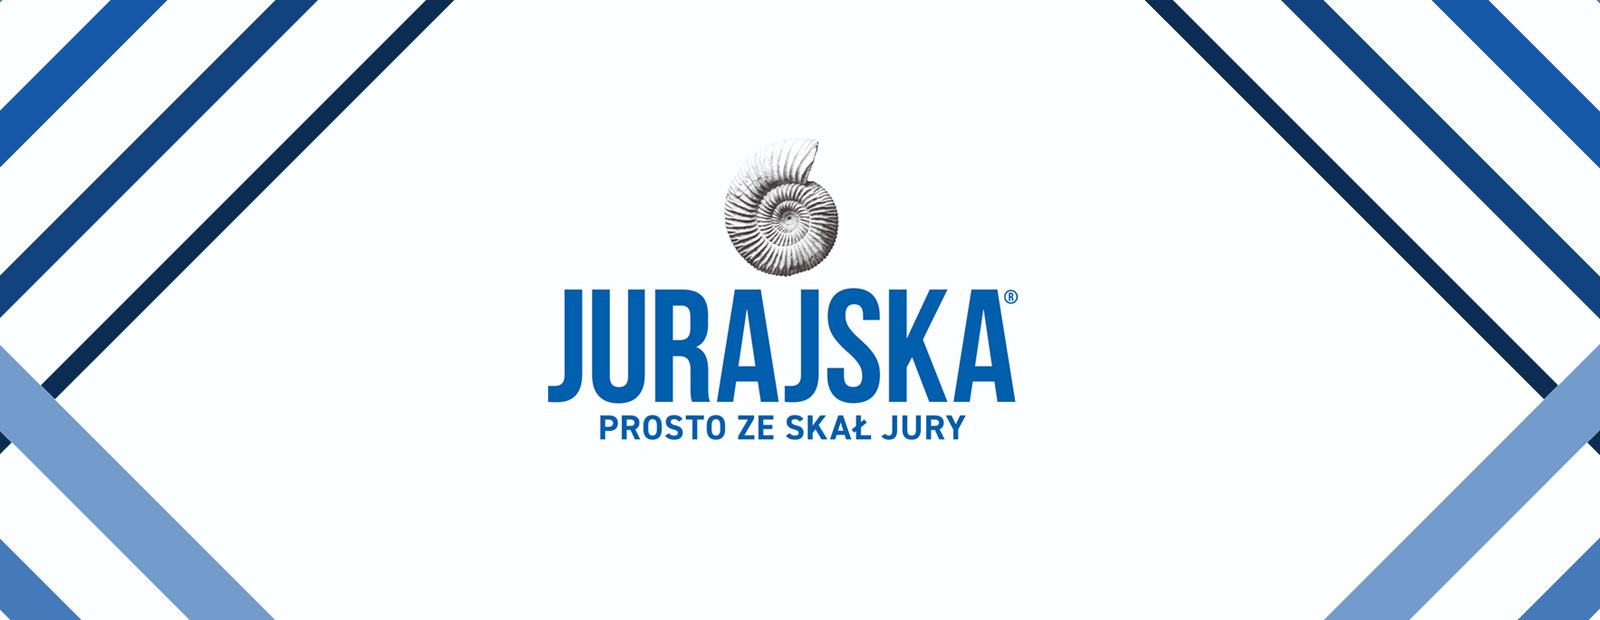 juraska-hortex2